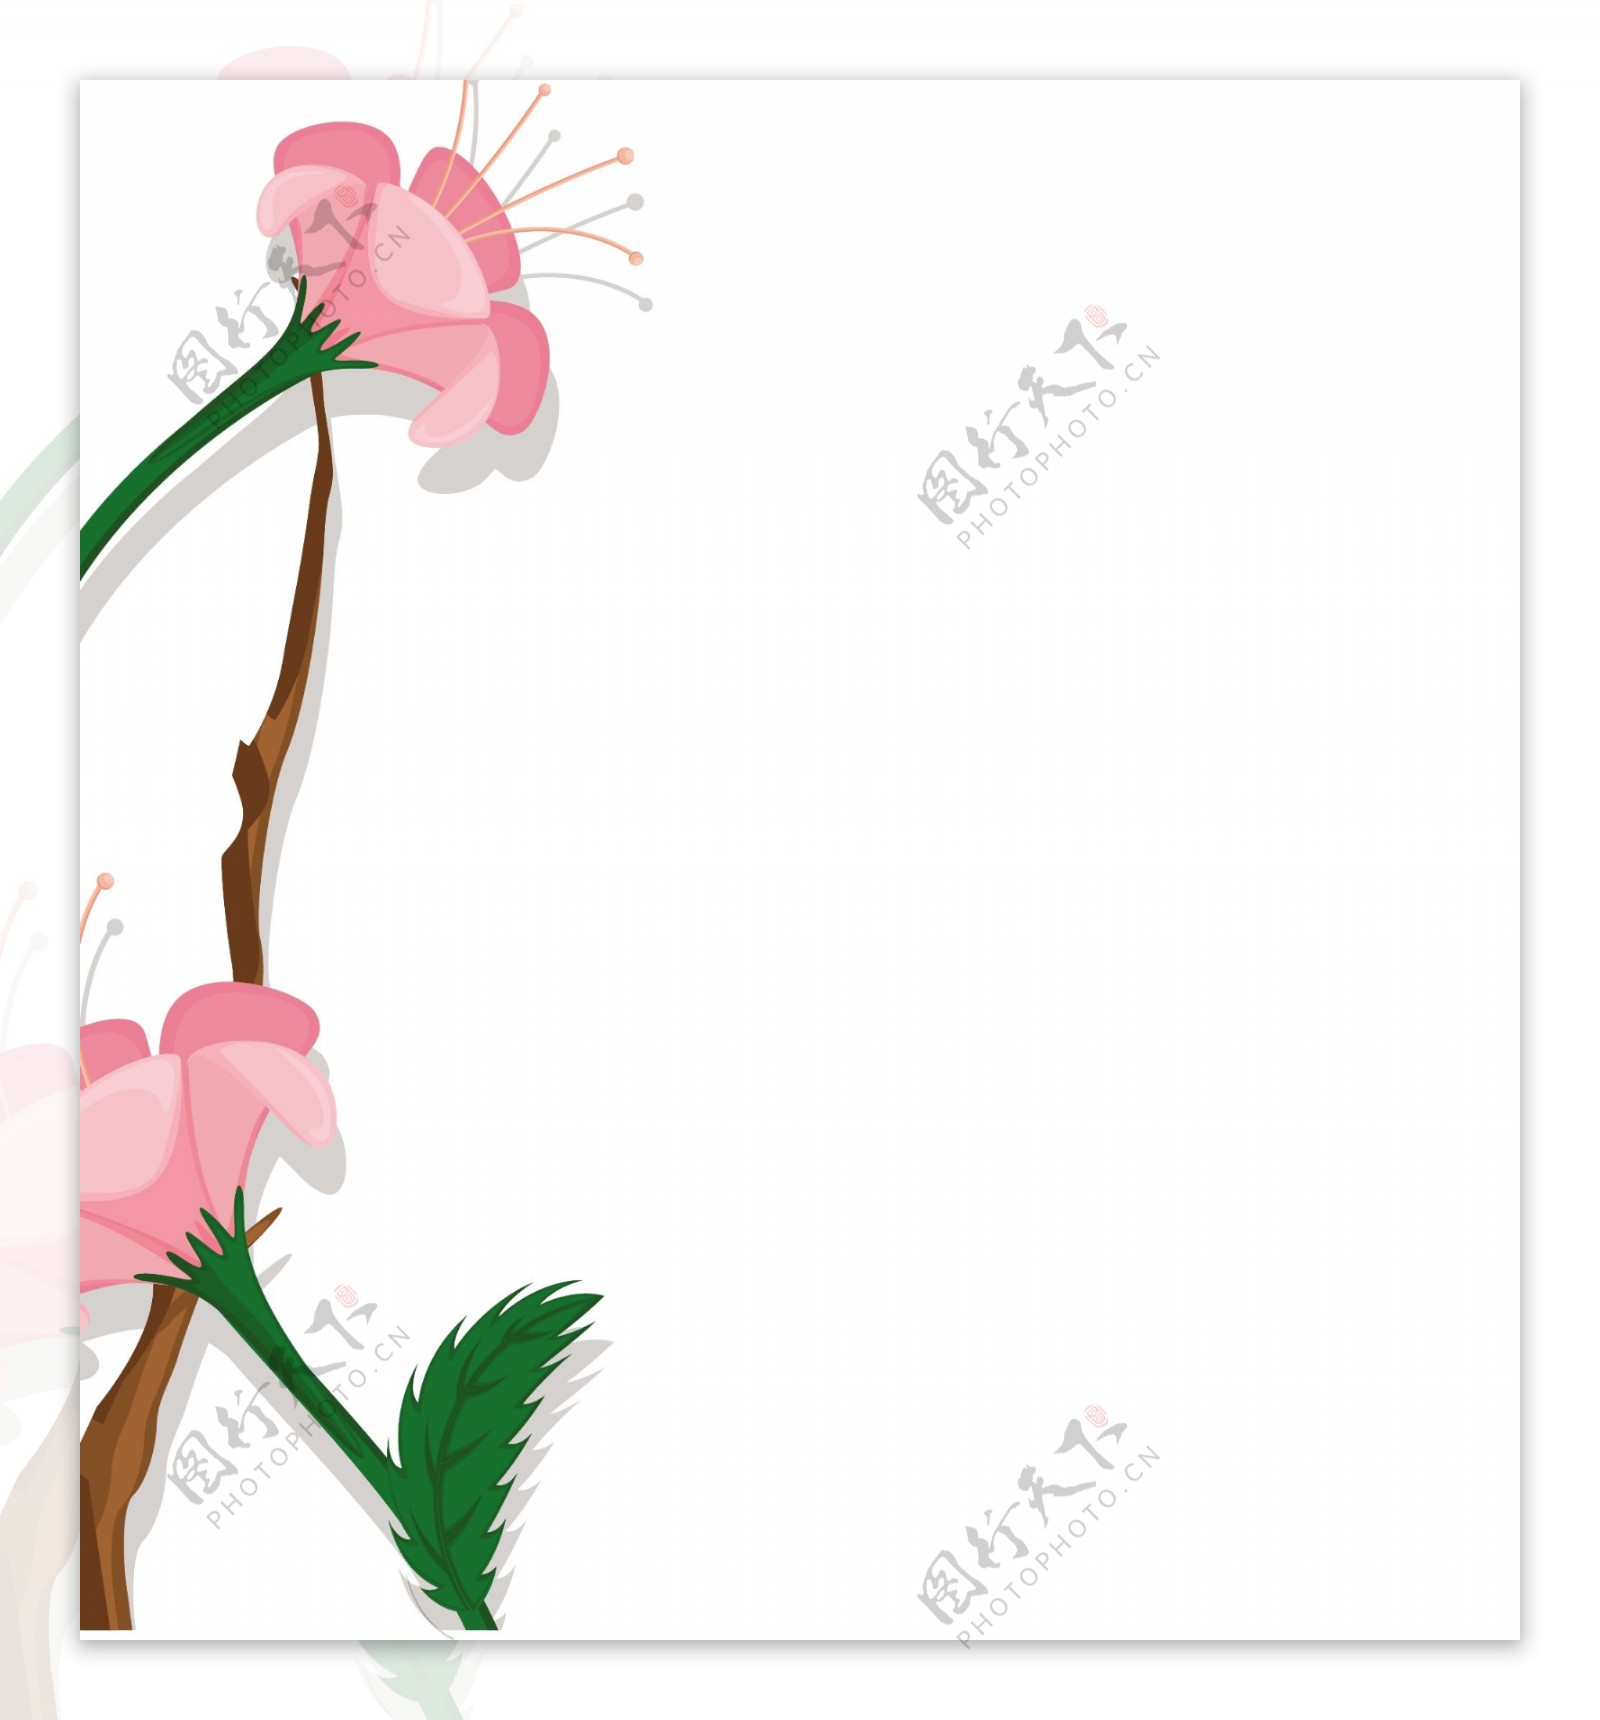 粉红色的雏菊矢量banner设计